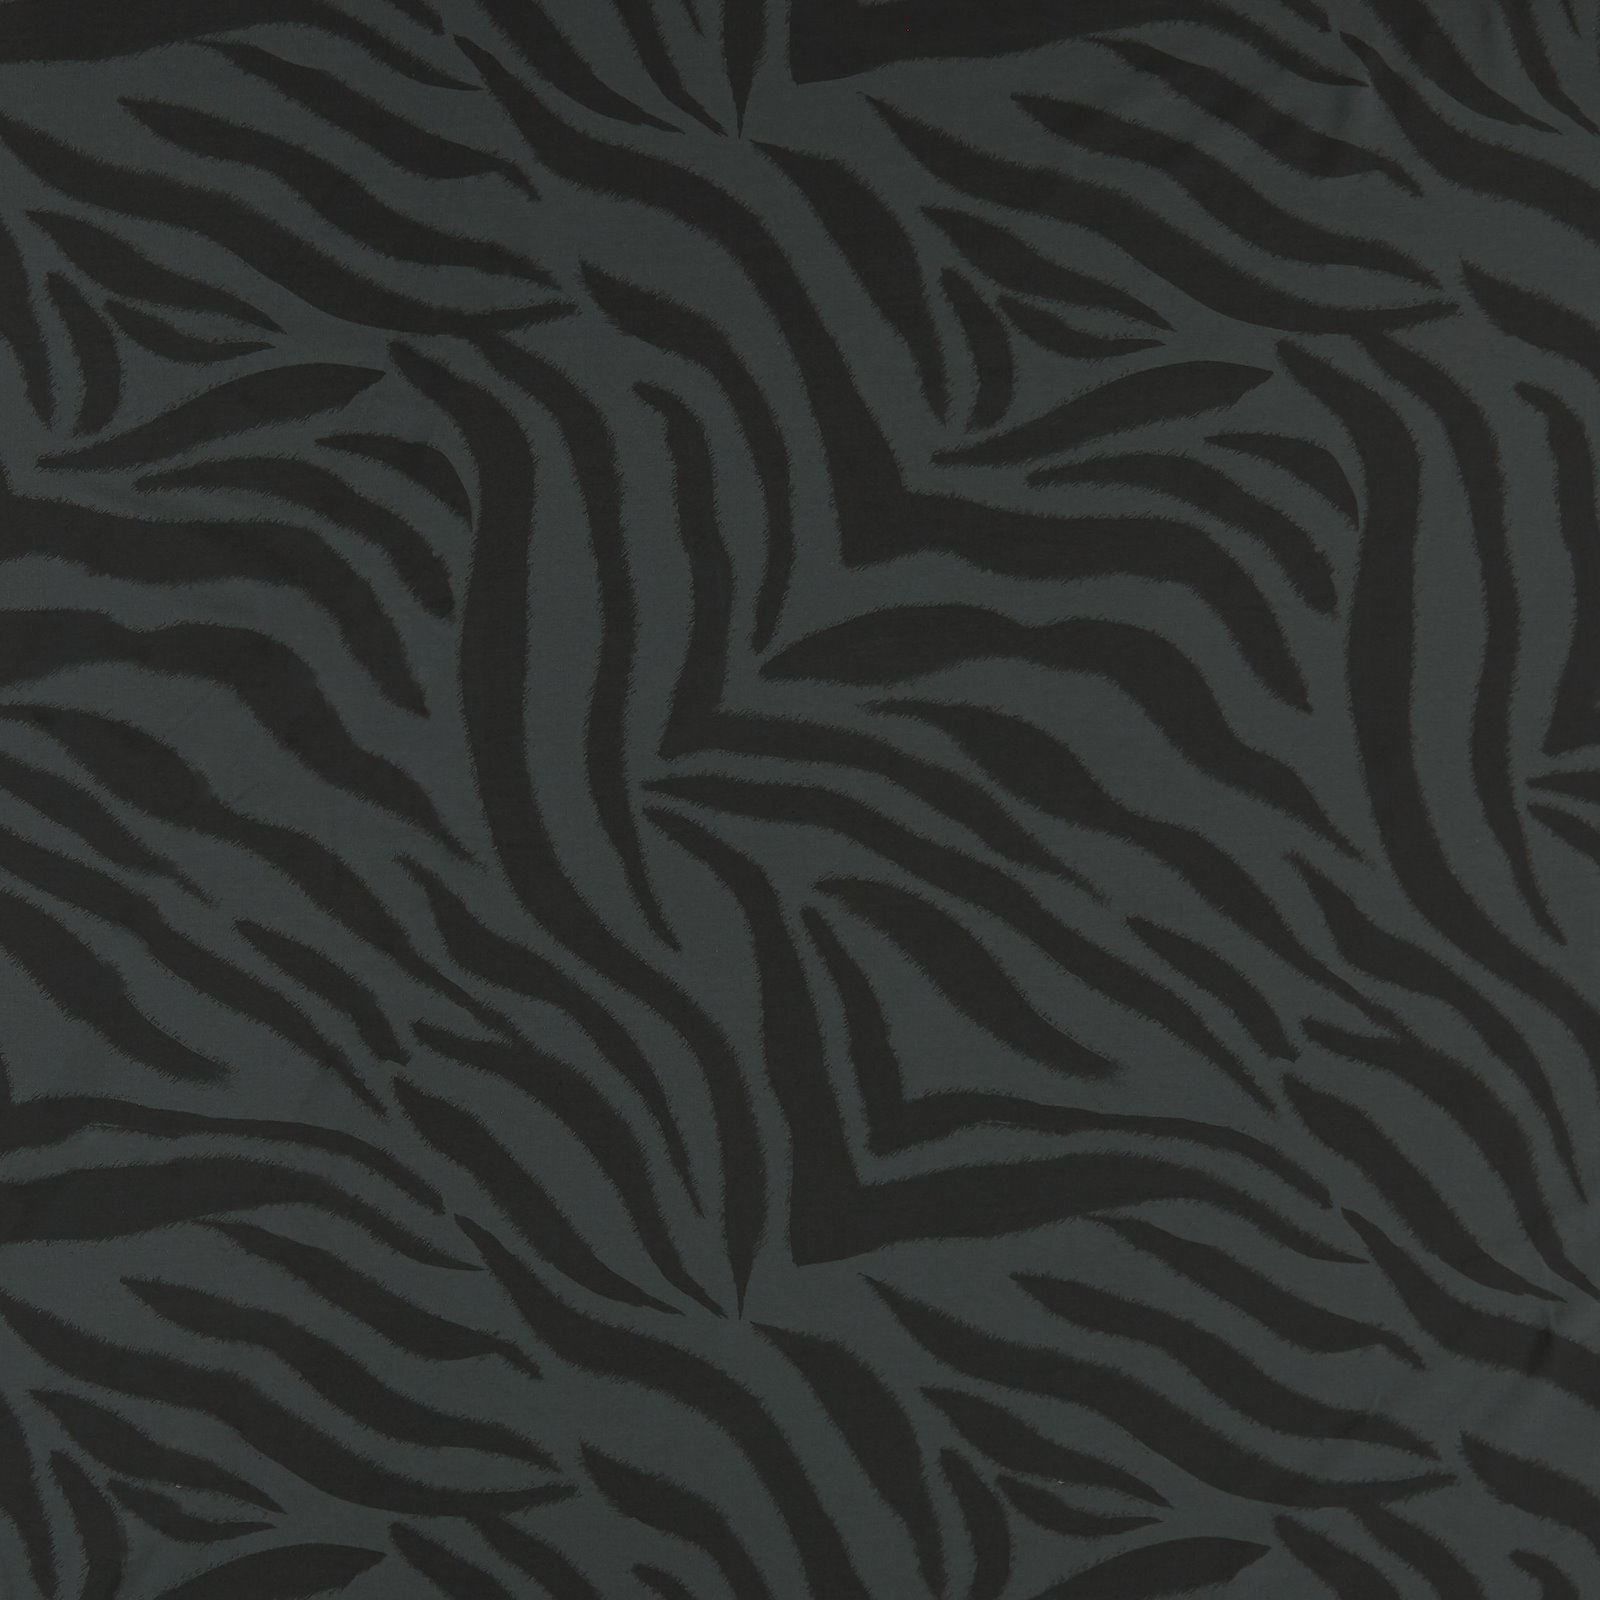 BCI str jersey dark grey w zebra stripes 273168_pack_sp